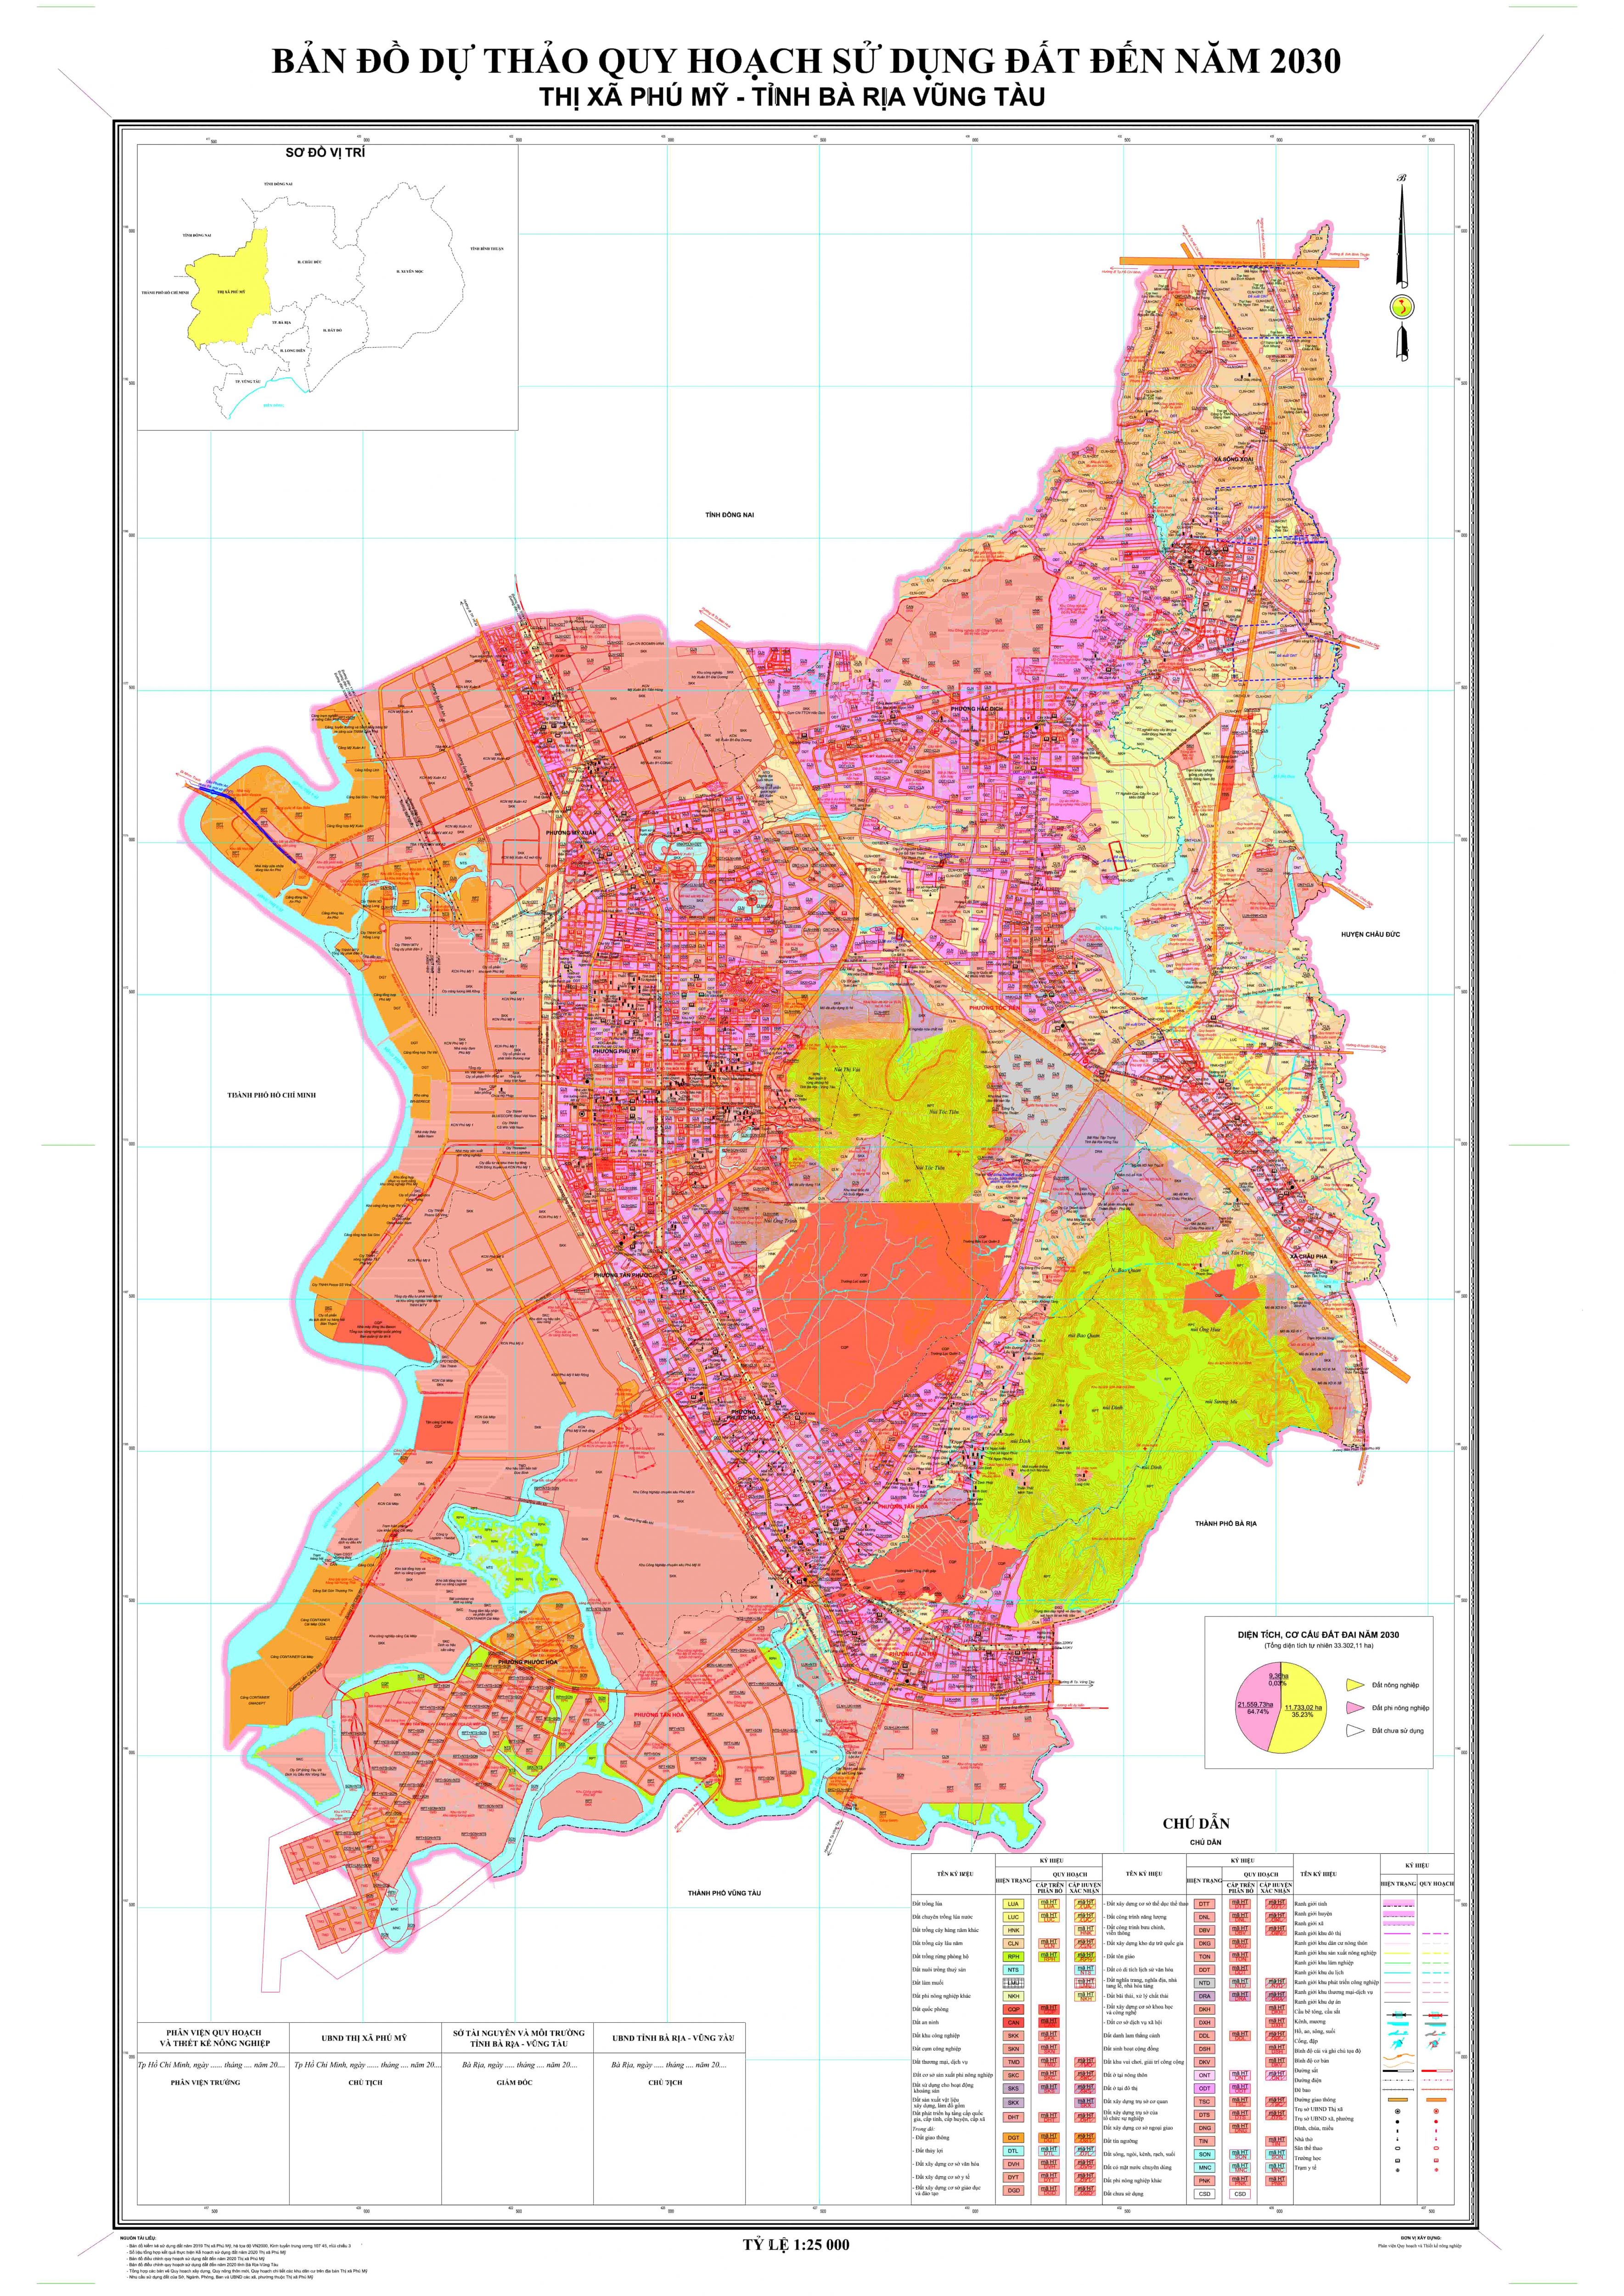 Bản đồ quy hoạch thị xã Phú Mỹ, tỉnh Bà Rịa - Vũng Tàu đến năm 2030